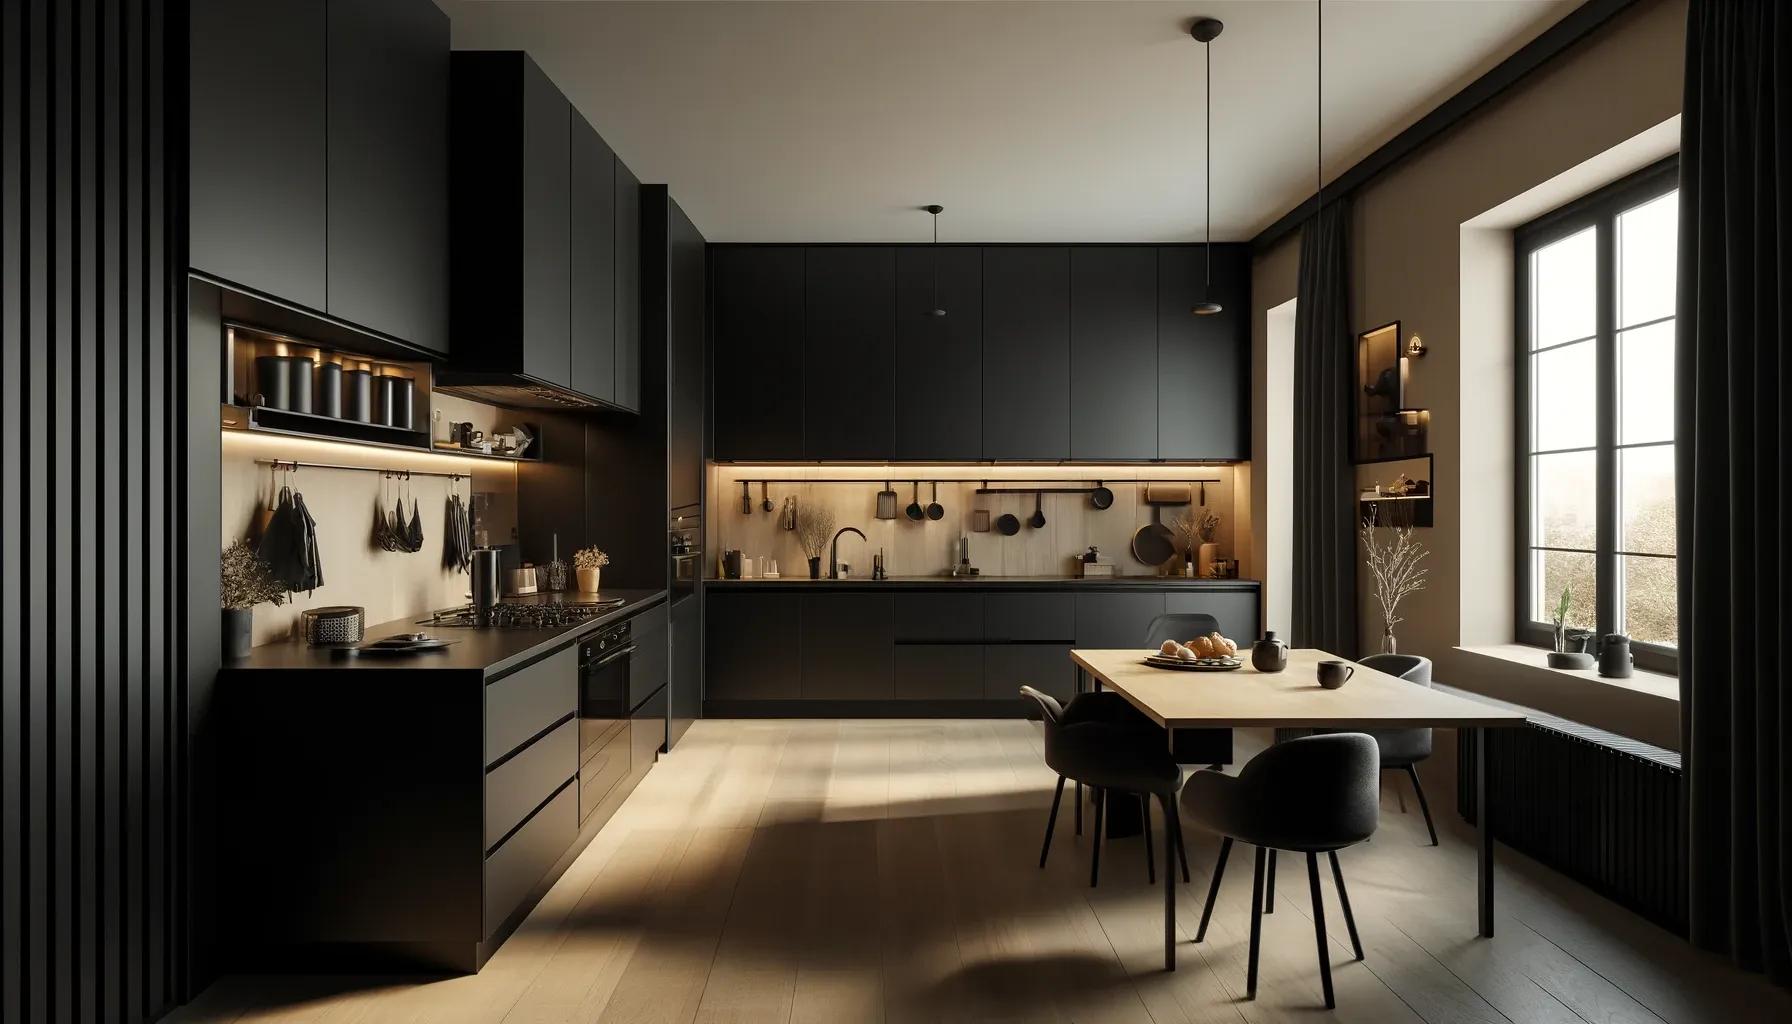 Eine moderne Küche mit einem eleganten, schwarzen Design. Die Schränke, Arbeitsplatten und Geräte sind alle schwarz und schaffen eine anspruchsvolle und stilvolle